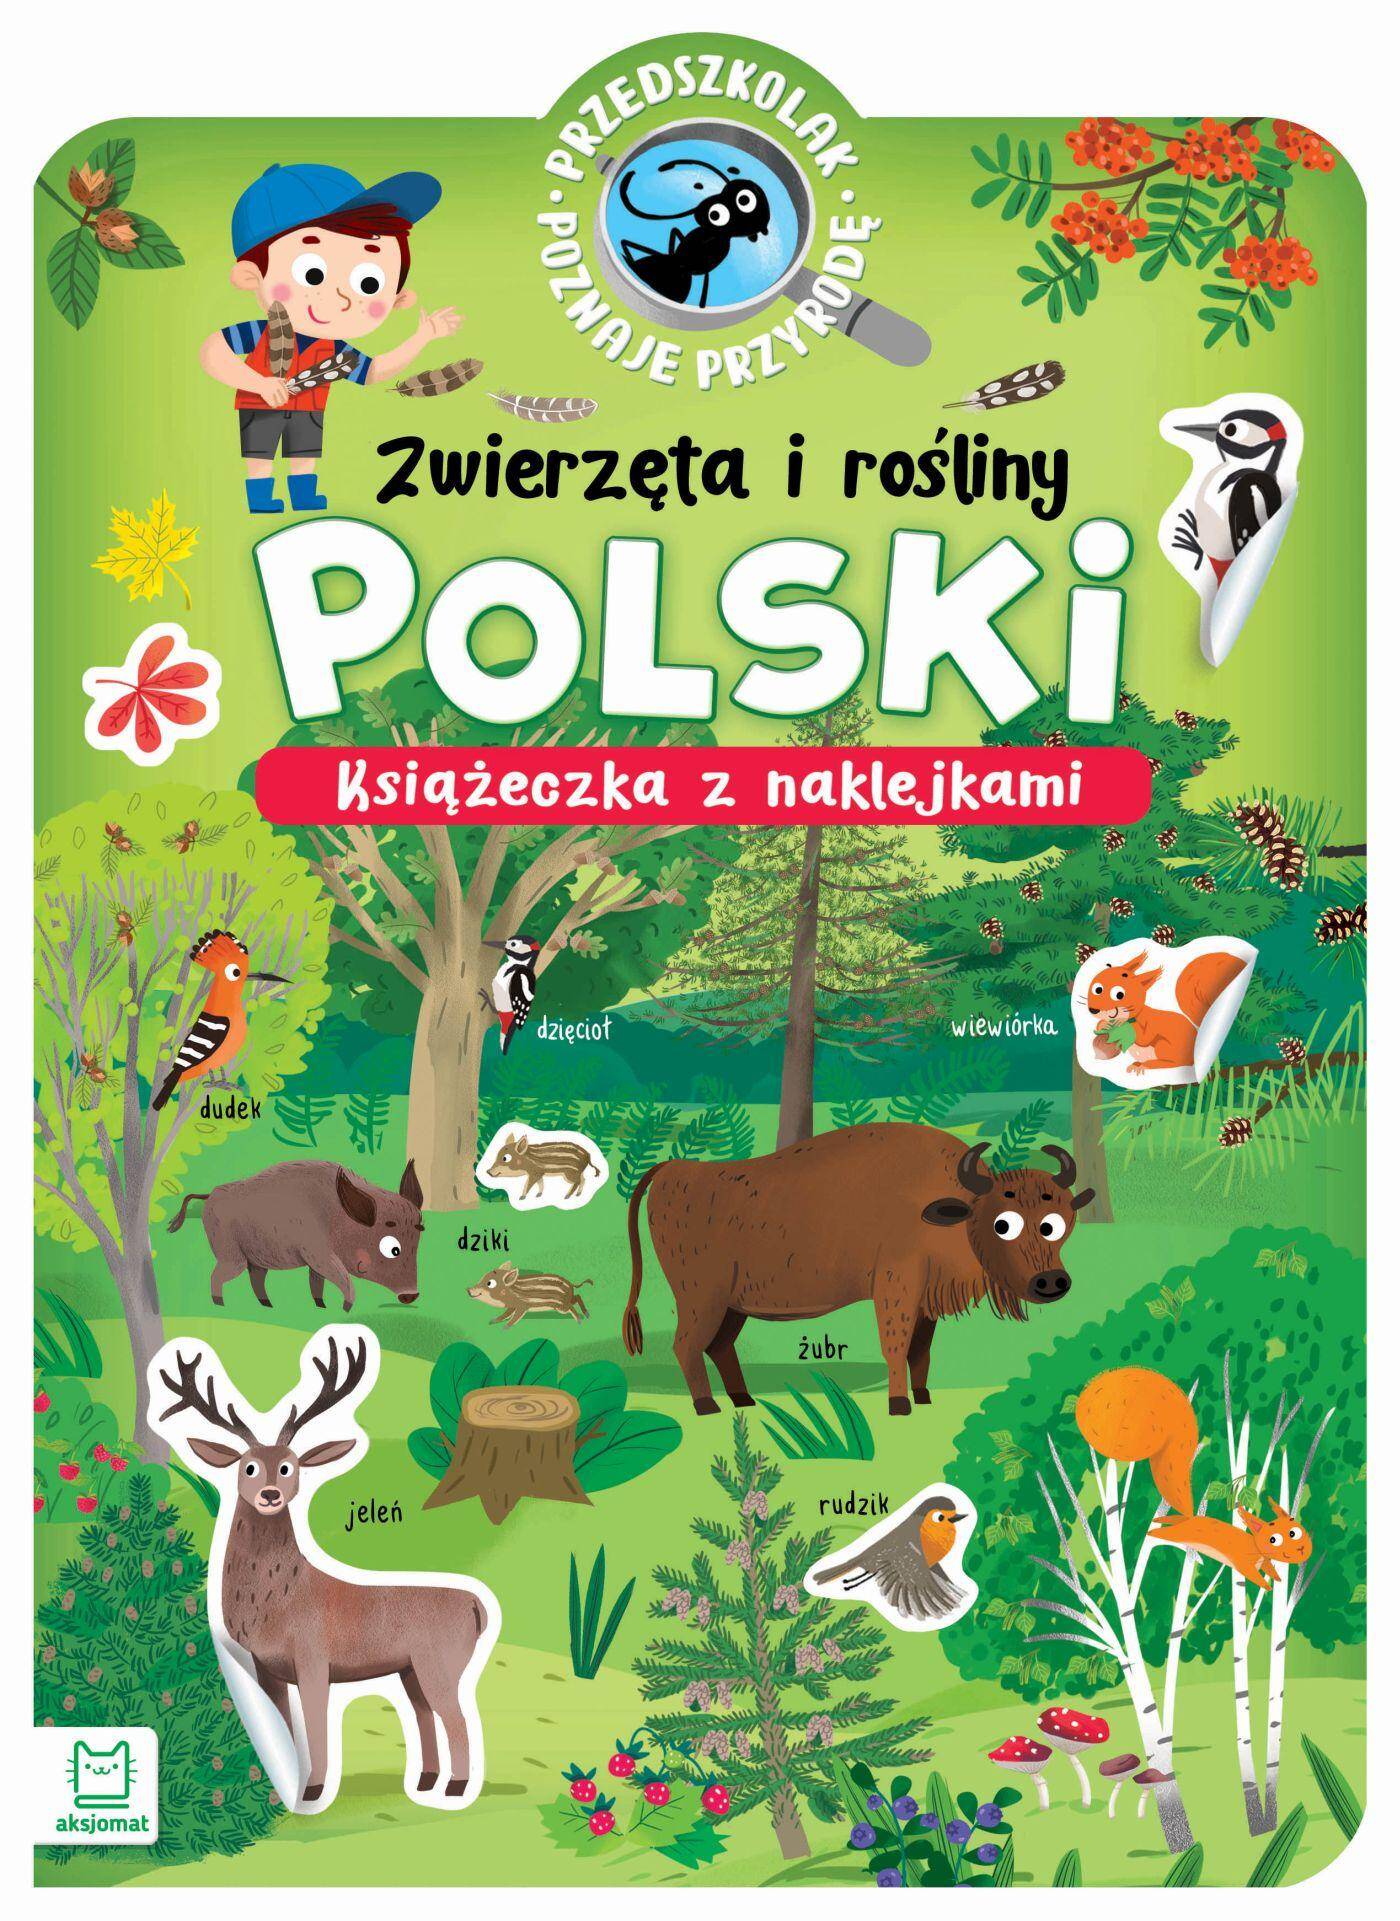 Zwierzęta i rośliny Polski. Przedszkolak poznaje przyrodę